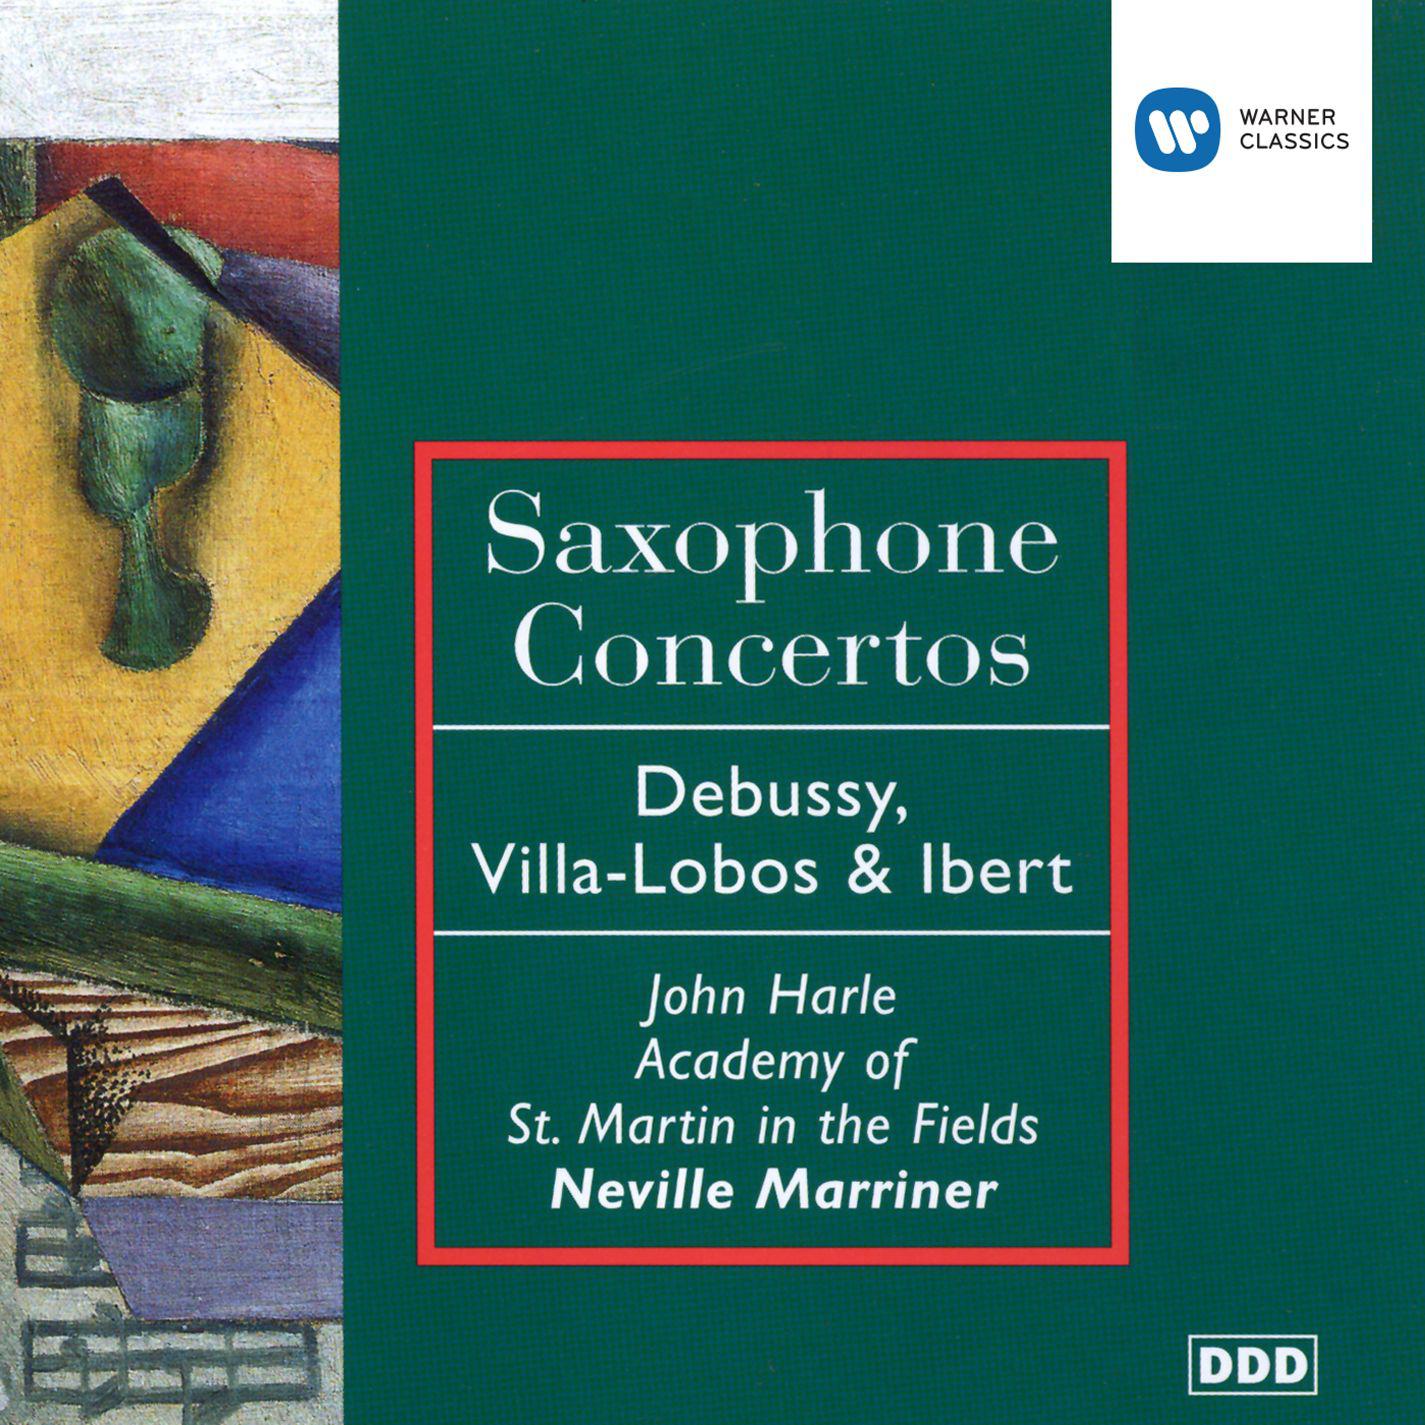 Concerto in E flat for Alto Saxophone & String Orchestra:I. Allegro moderato